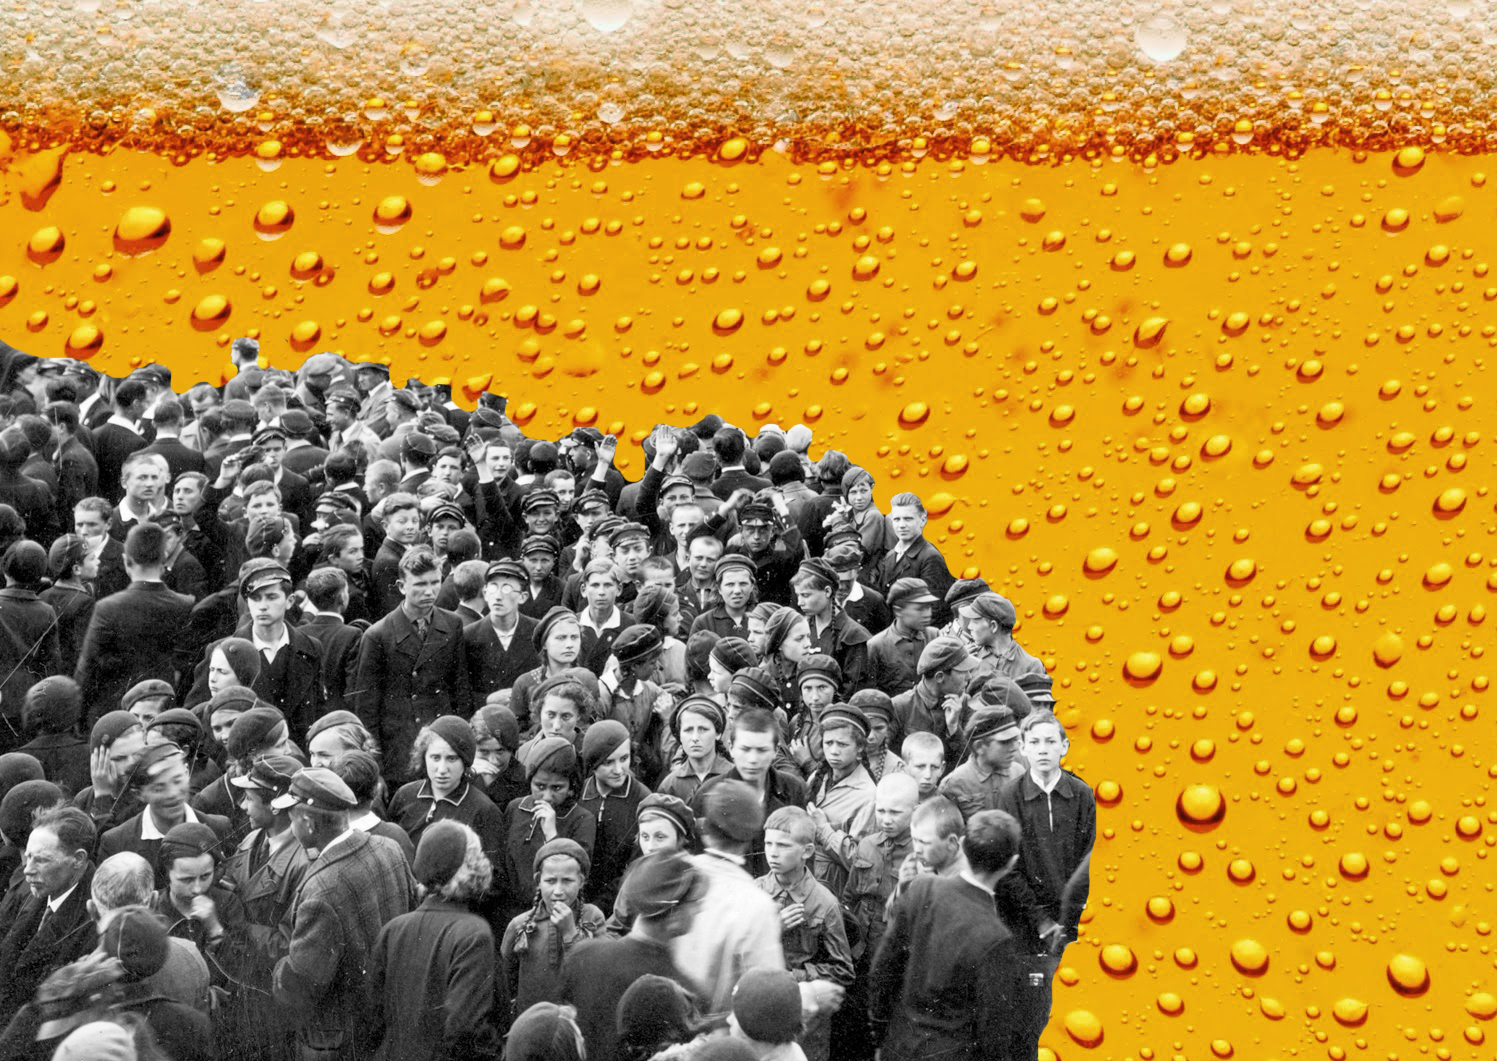 Як пиво потопило життя десятків жителів Лондона 